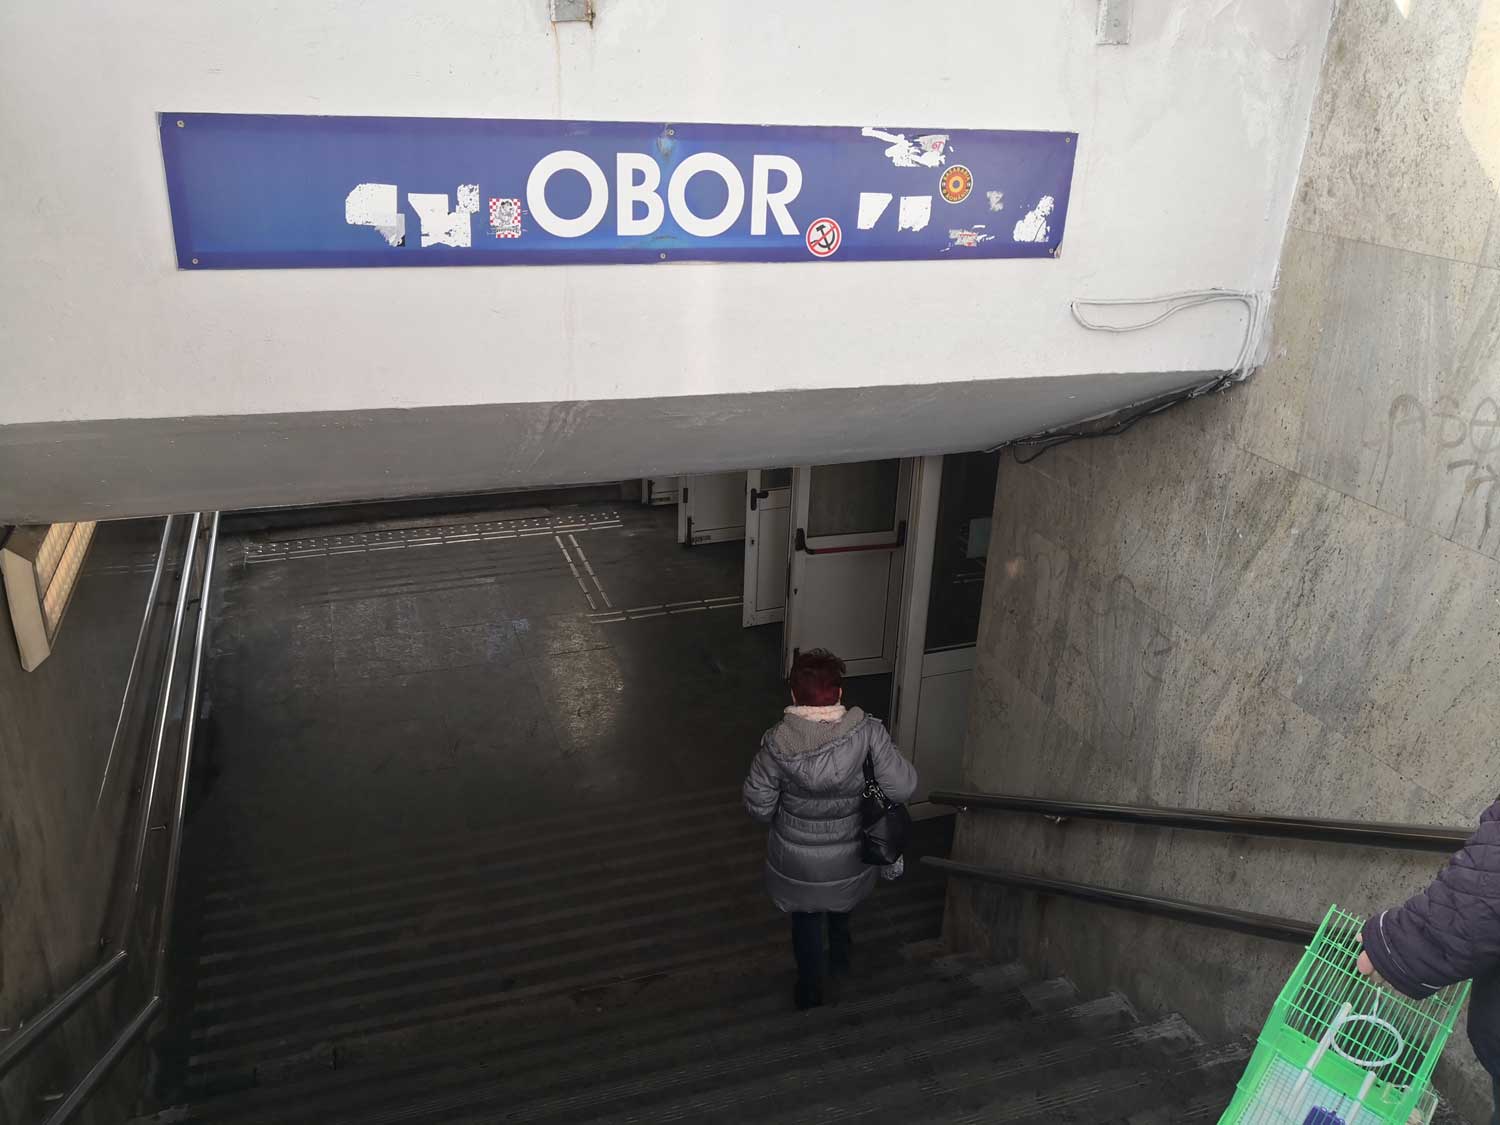 La fondation se trouve à l’arrêt de métro « Obor » dans Bucarest © Globe Reporters